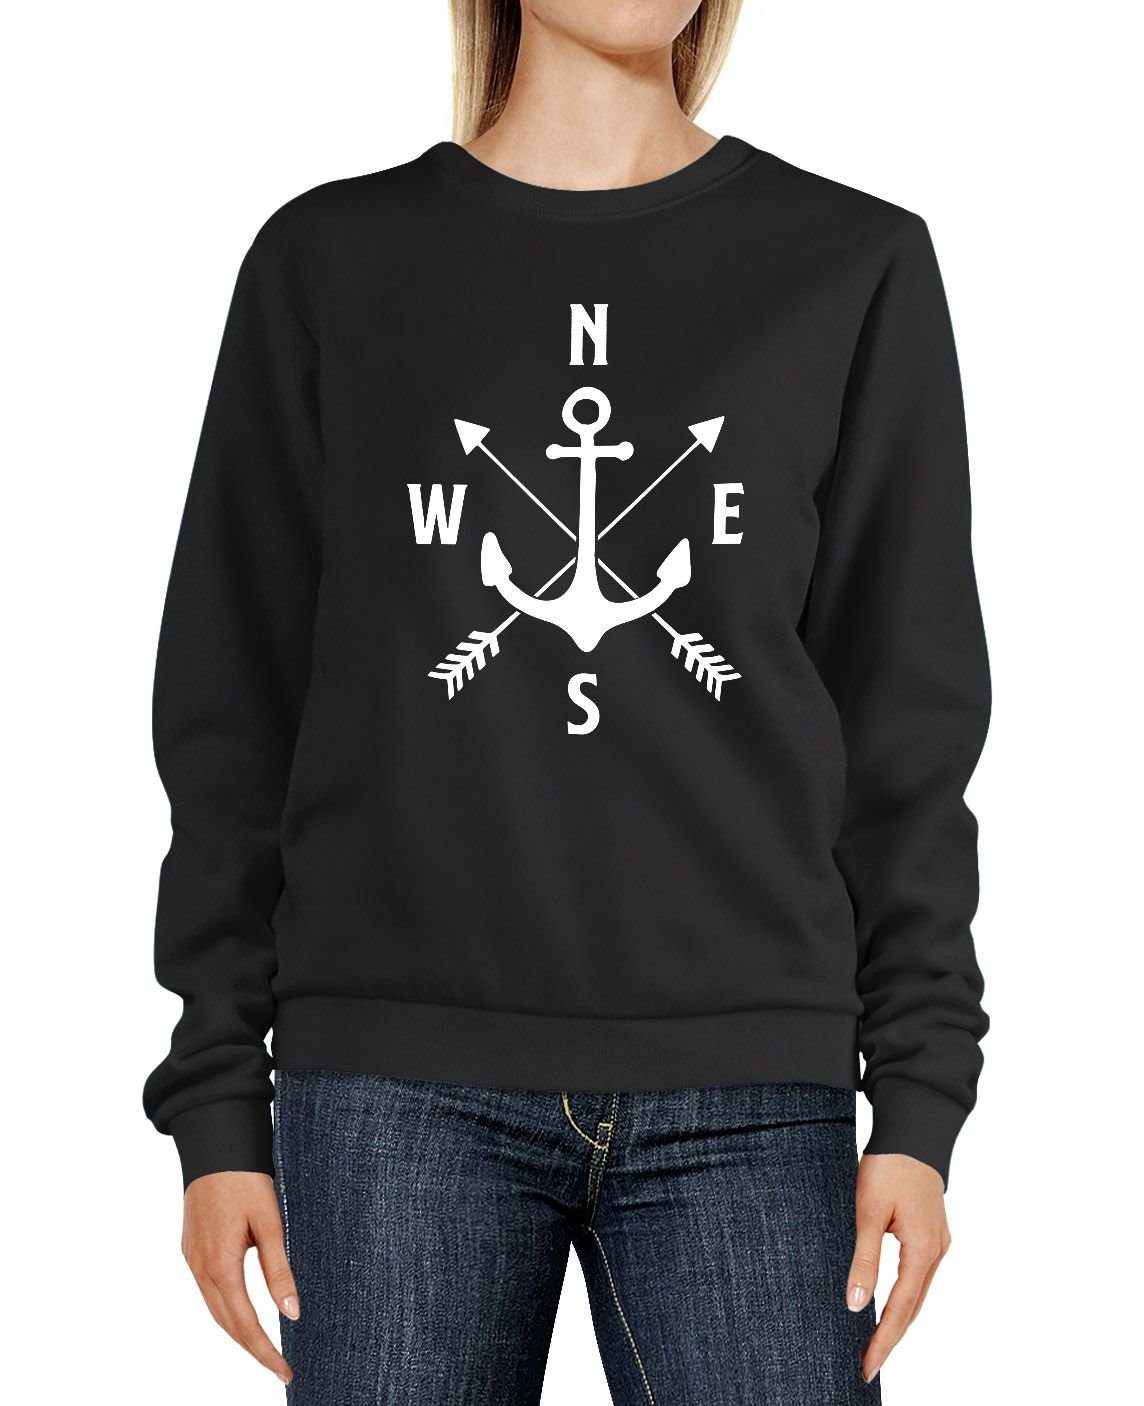 schwarz Sweater Sweatshirt Anker Aufdruck Pulli Kompass Rundhals-Pullover Sweatshirt Damen Moonworks® MoonWorks Pfeile Motiv